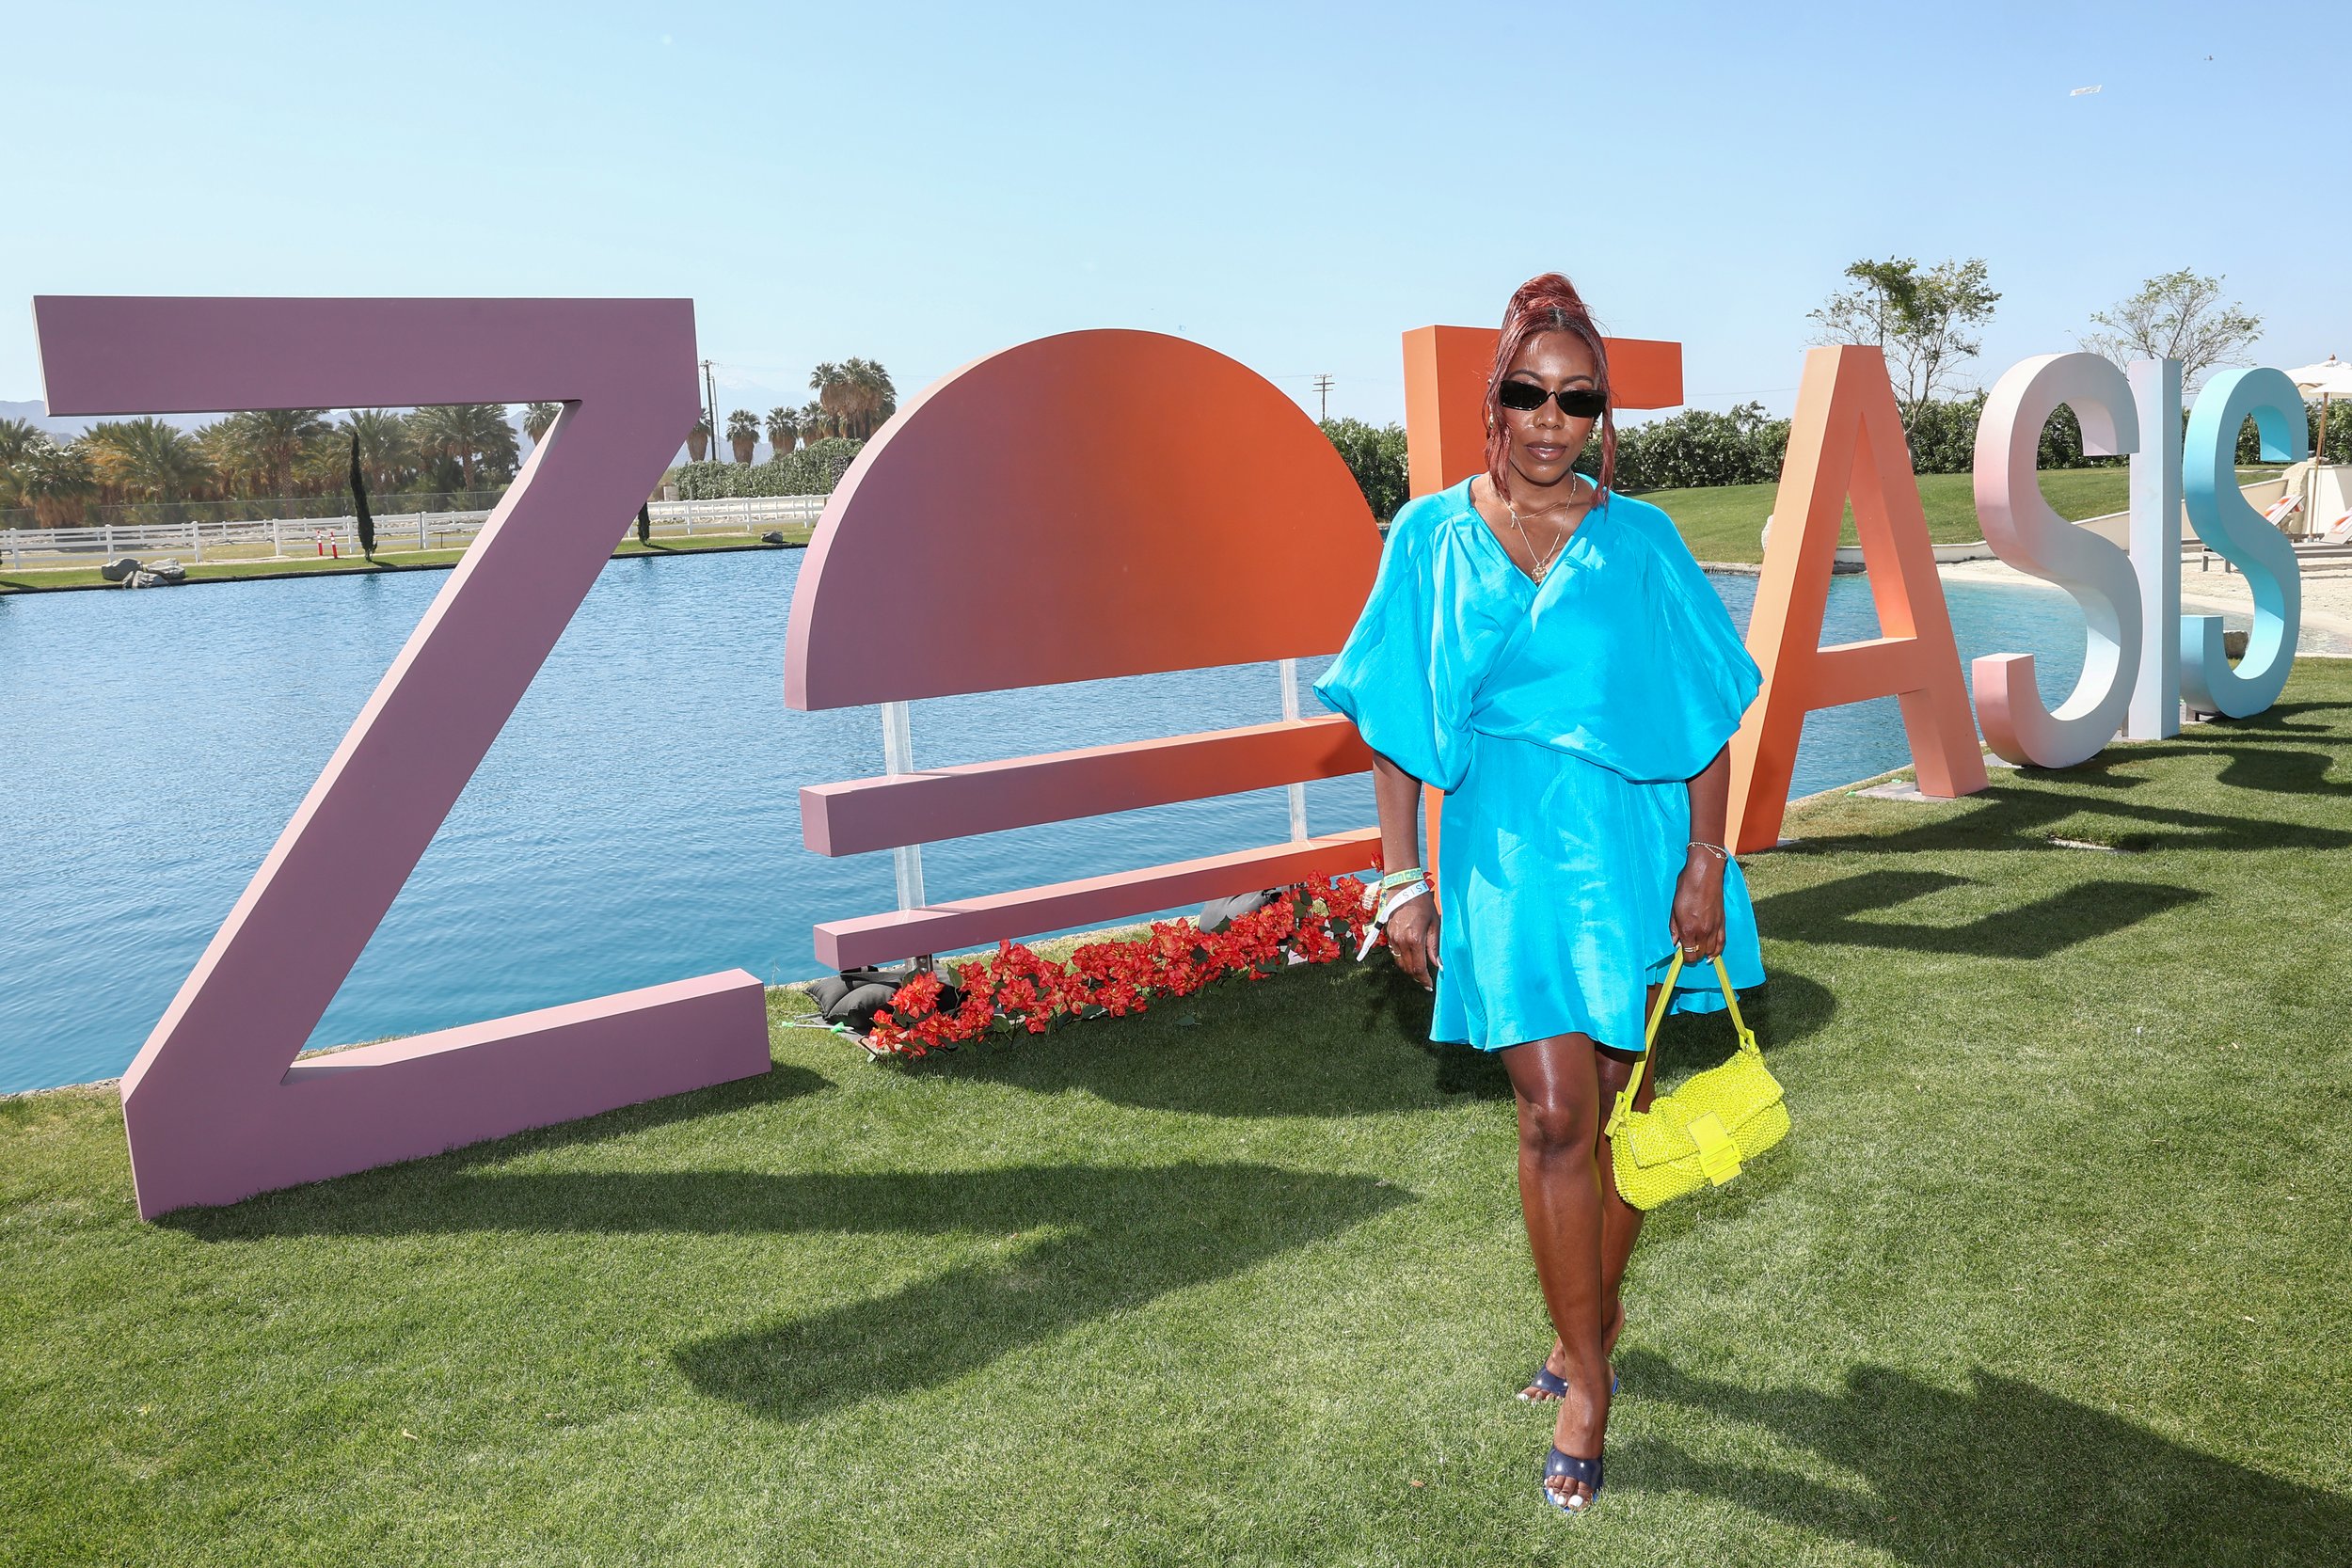 ZOEasis 2022 At Coachella Was A Dreamy Desert Soirée